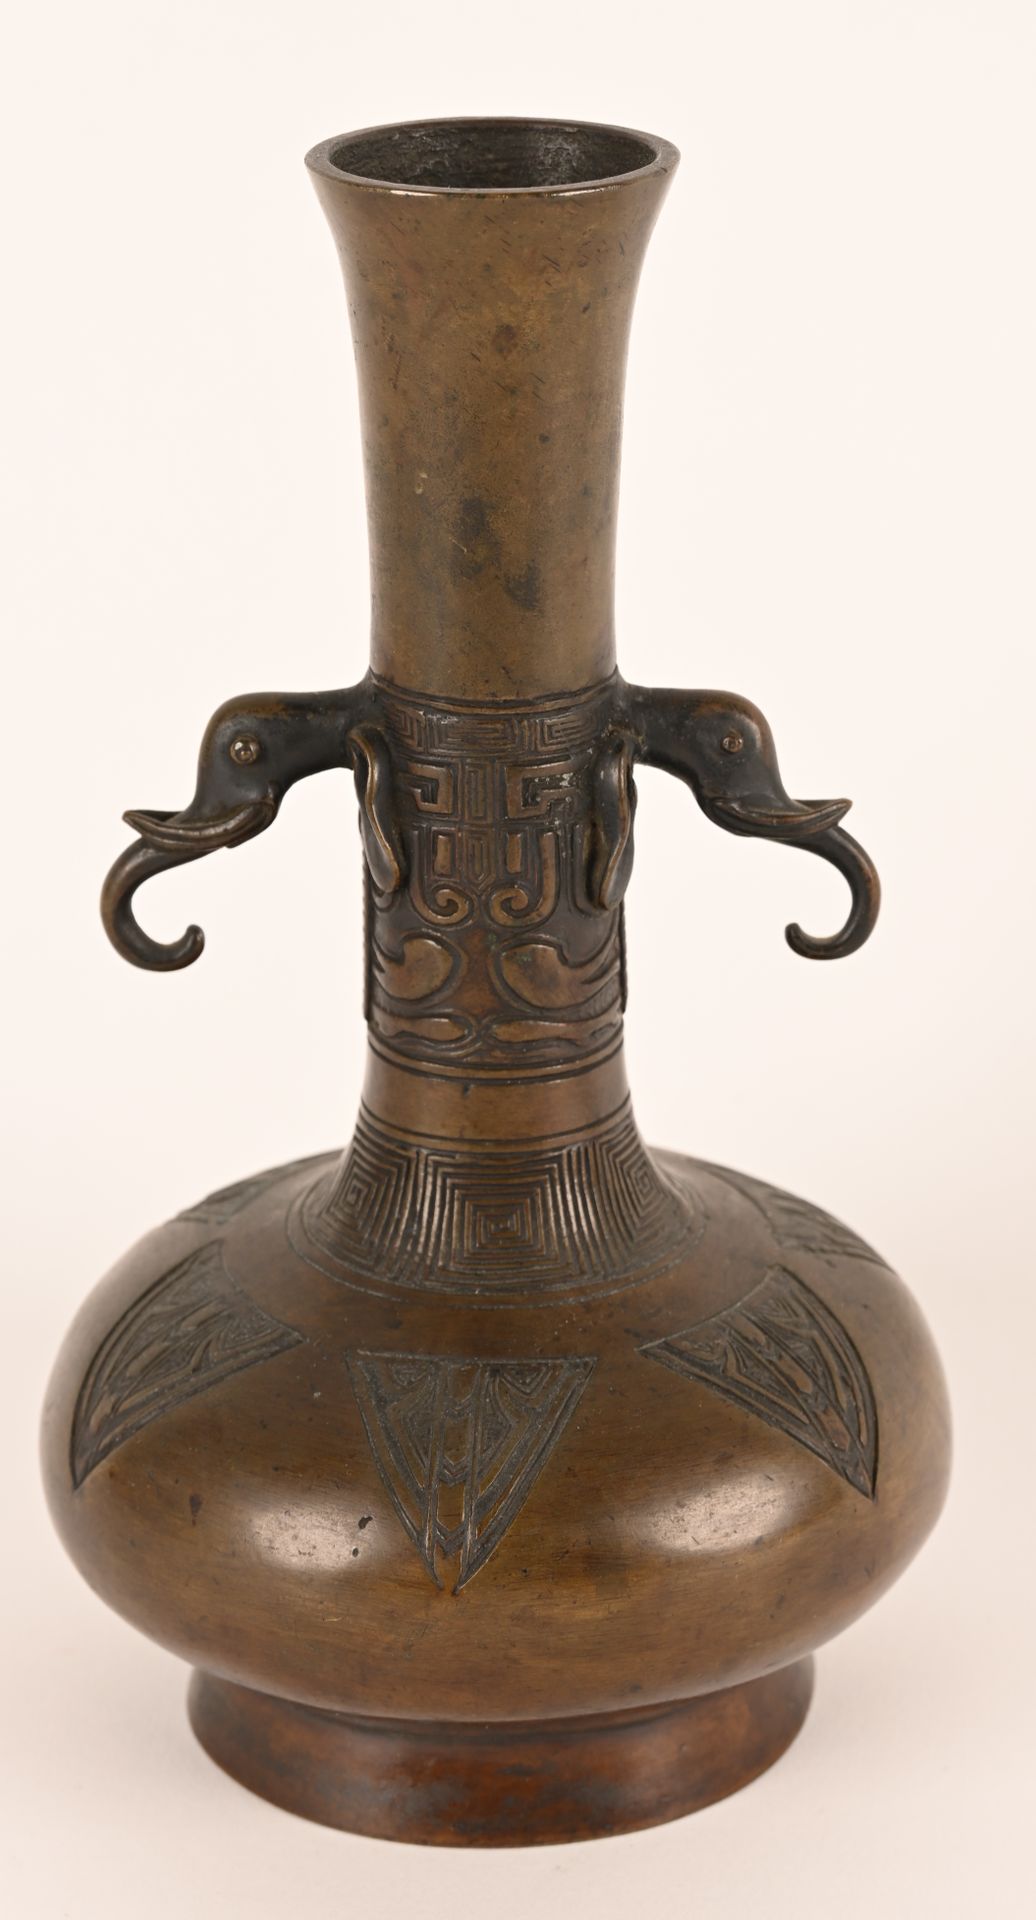 Vase en bronze patiné à décor gravé 中国。
雕花青铜花瓶，有雕刻的装饰和两个大象形状的把手。19世纪的作品。
高度：21厘米